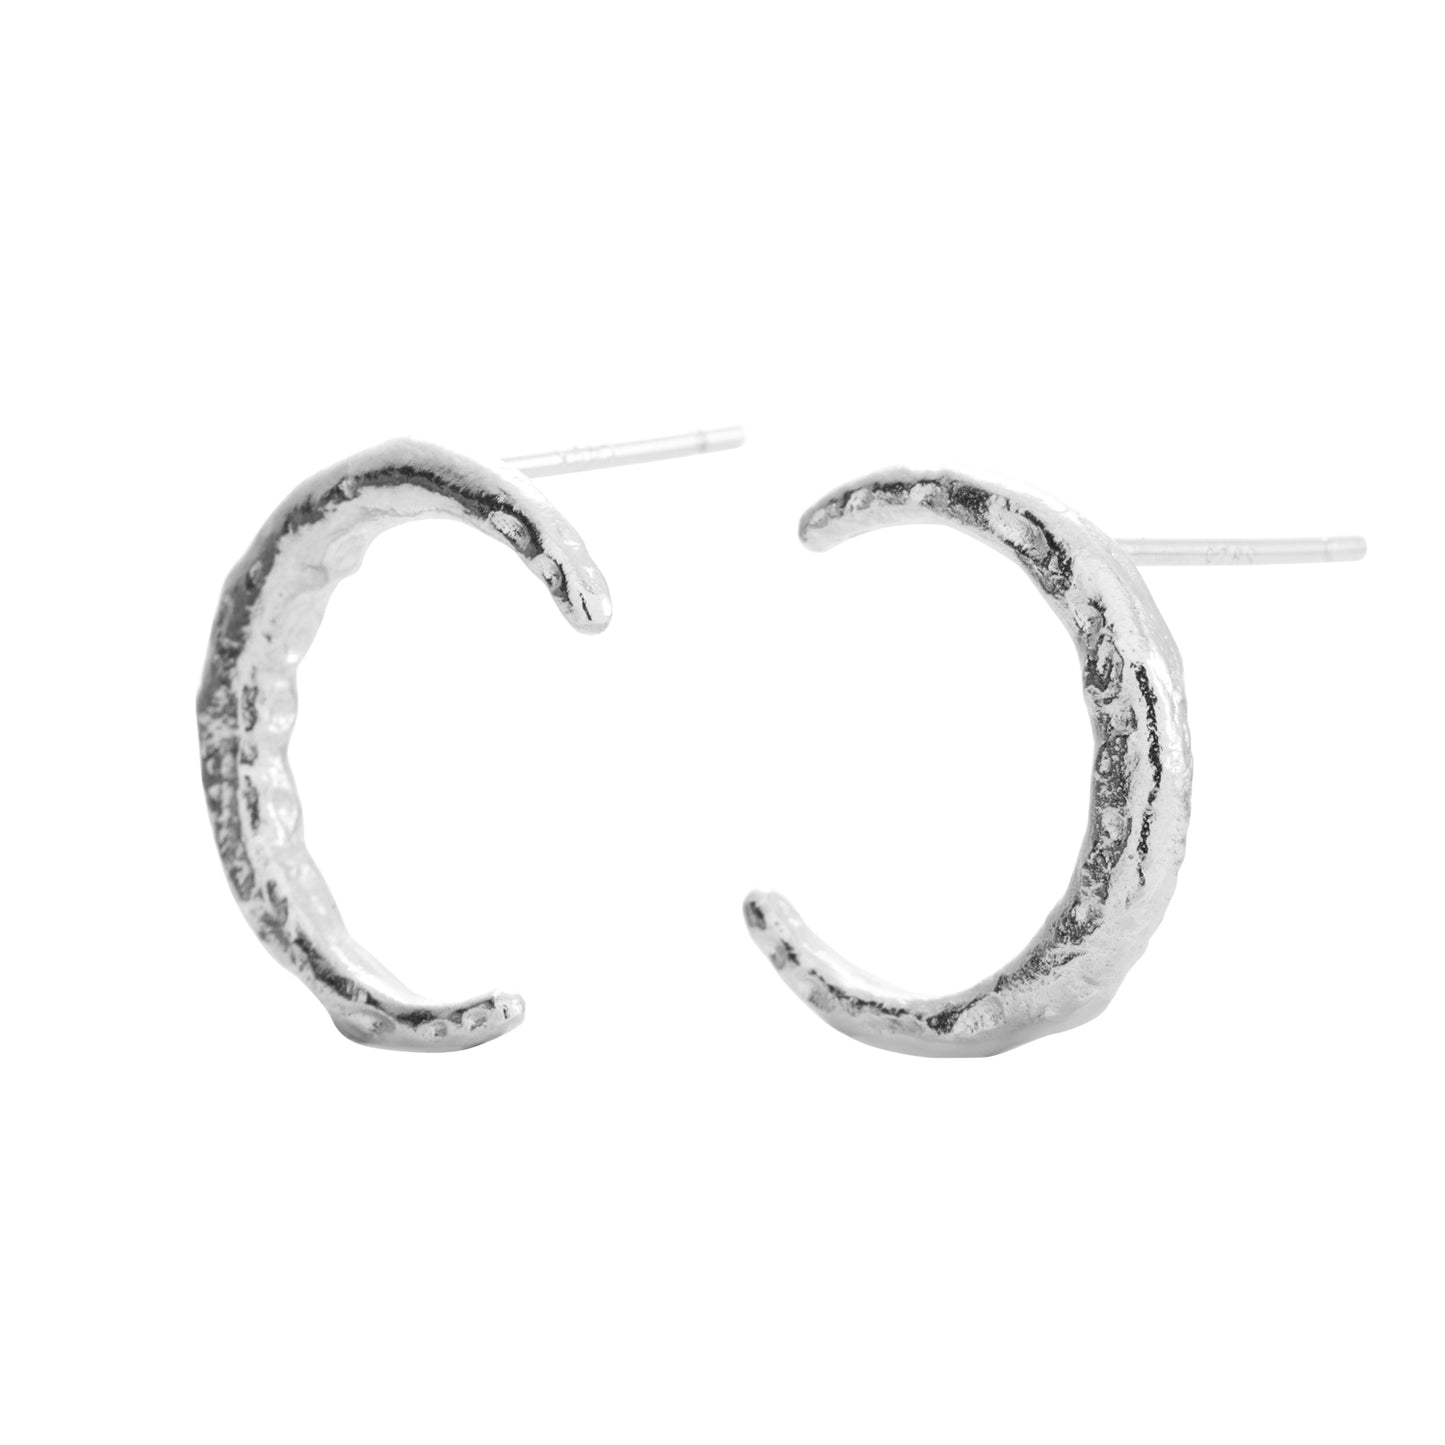 Luna silver stud earrings